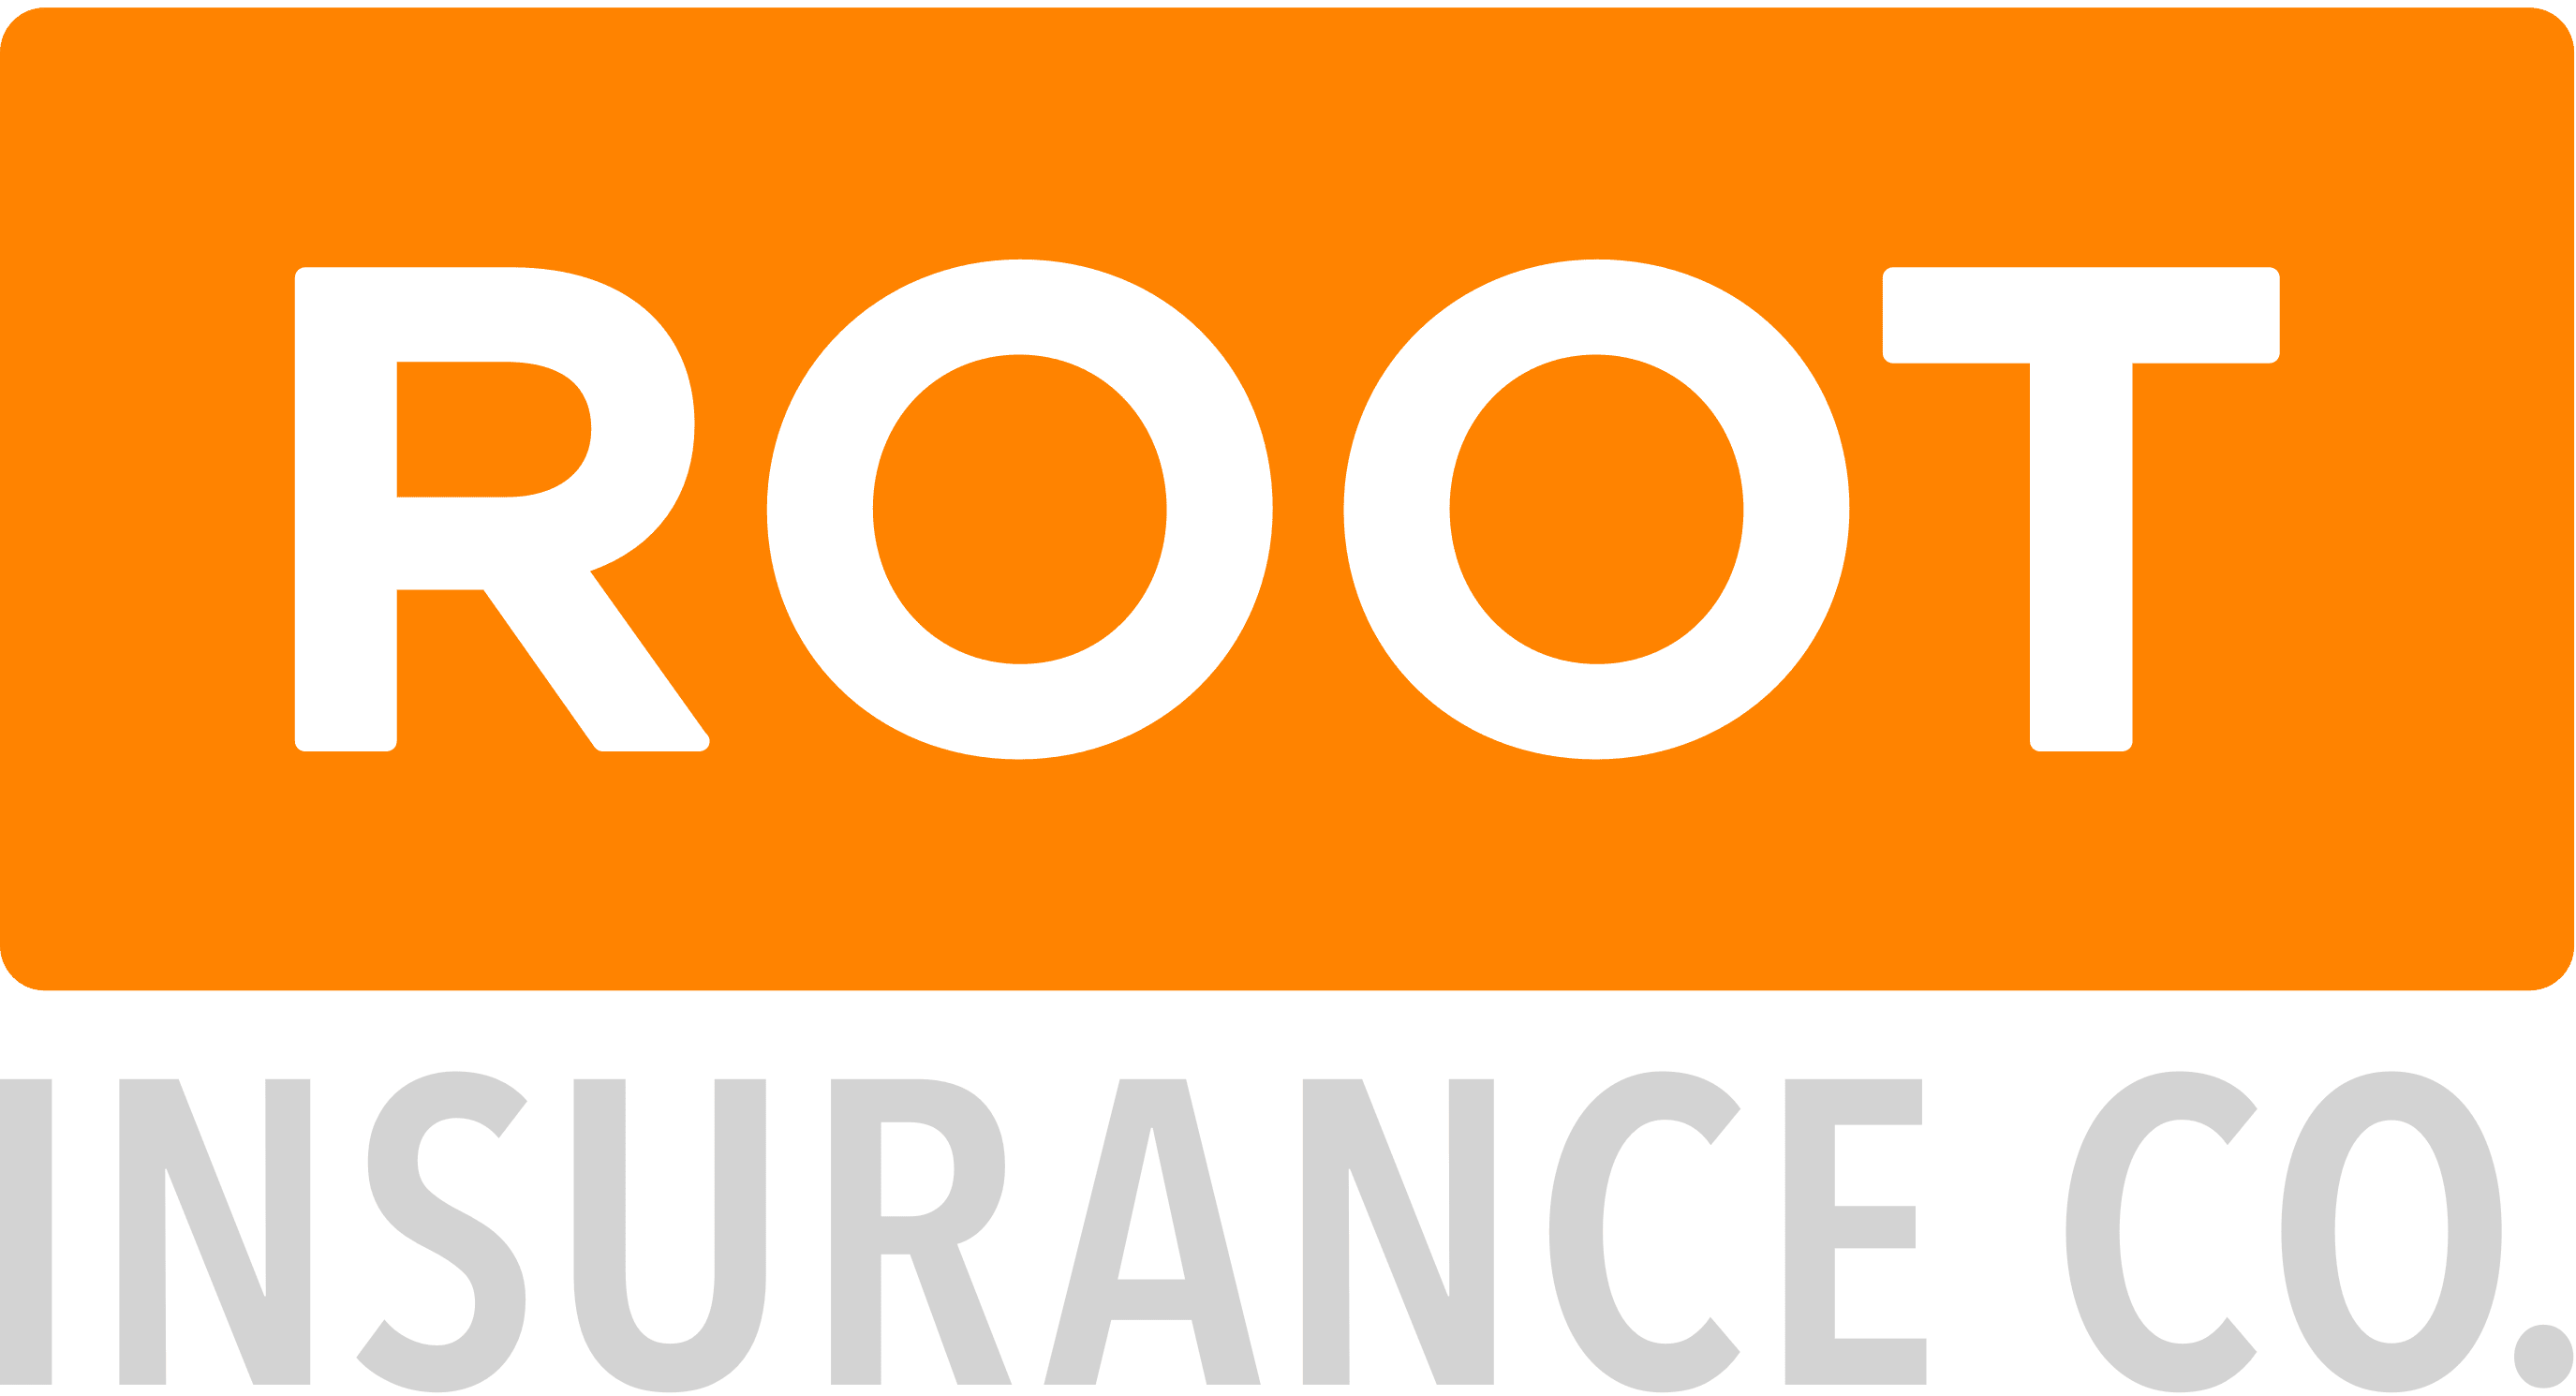 Root Insurance Company